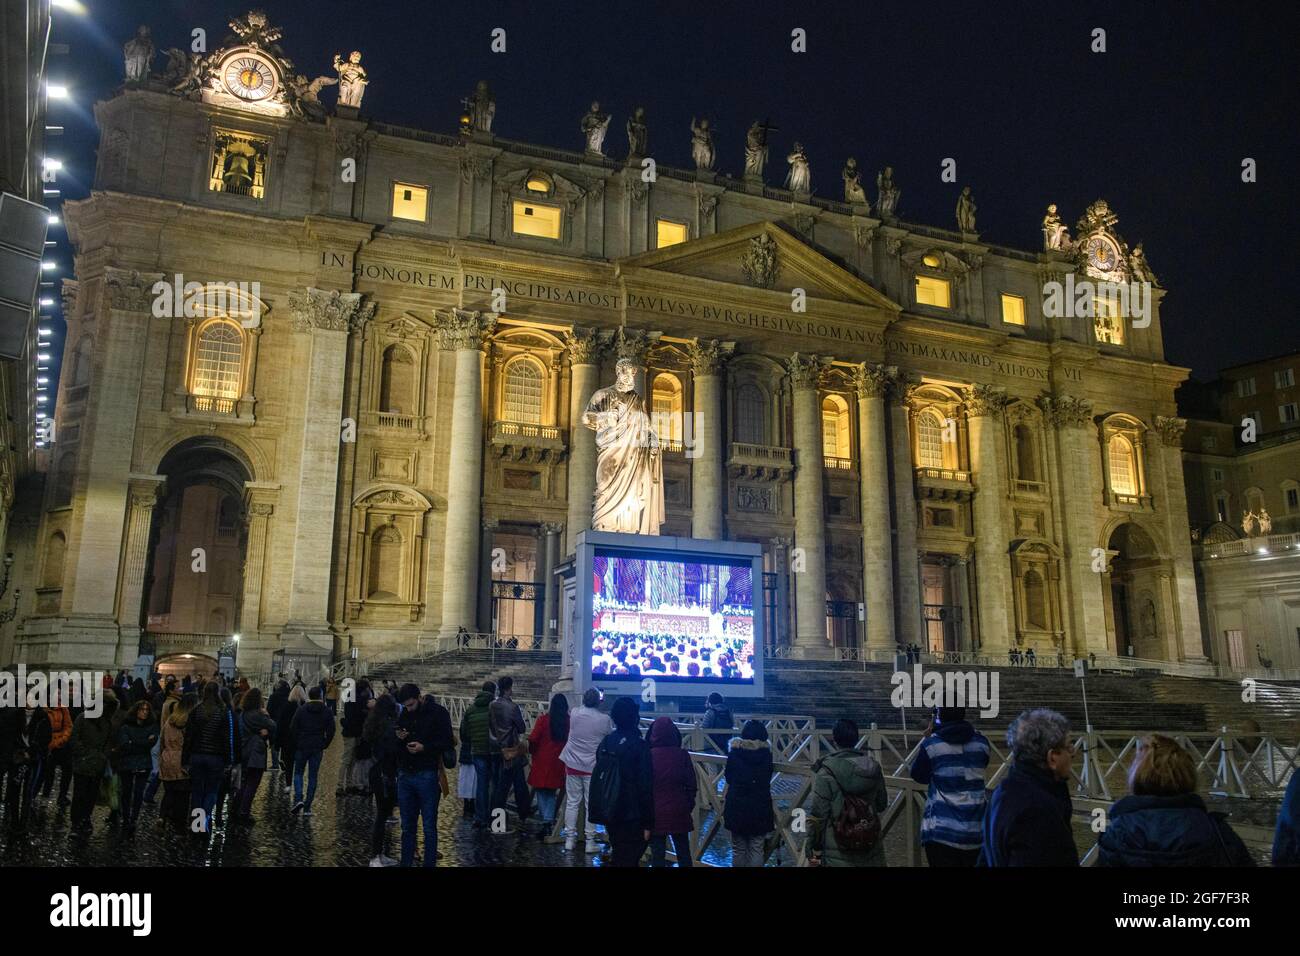 Les fidèles chrétiens à l'extérieur de la basilique Saint-Pierre regardent la messe des Papes sur grand écran la nuit, Vatican, Italie Banque D'Images